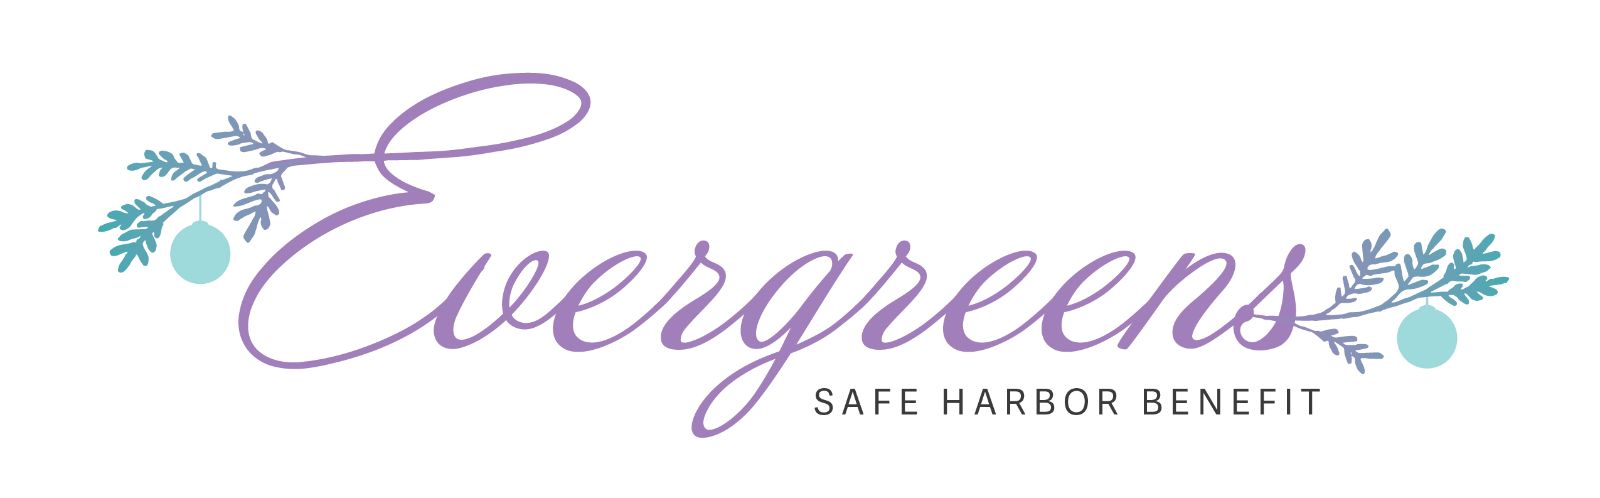 Evergreens Safe Harbor Benefit